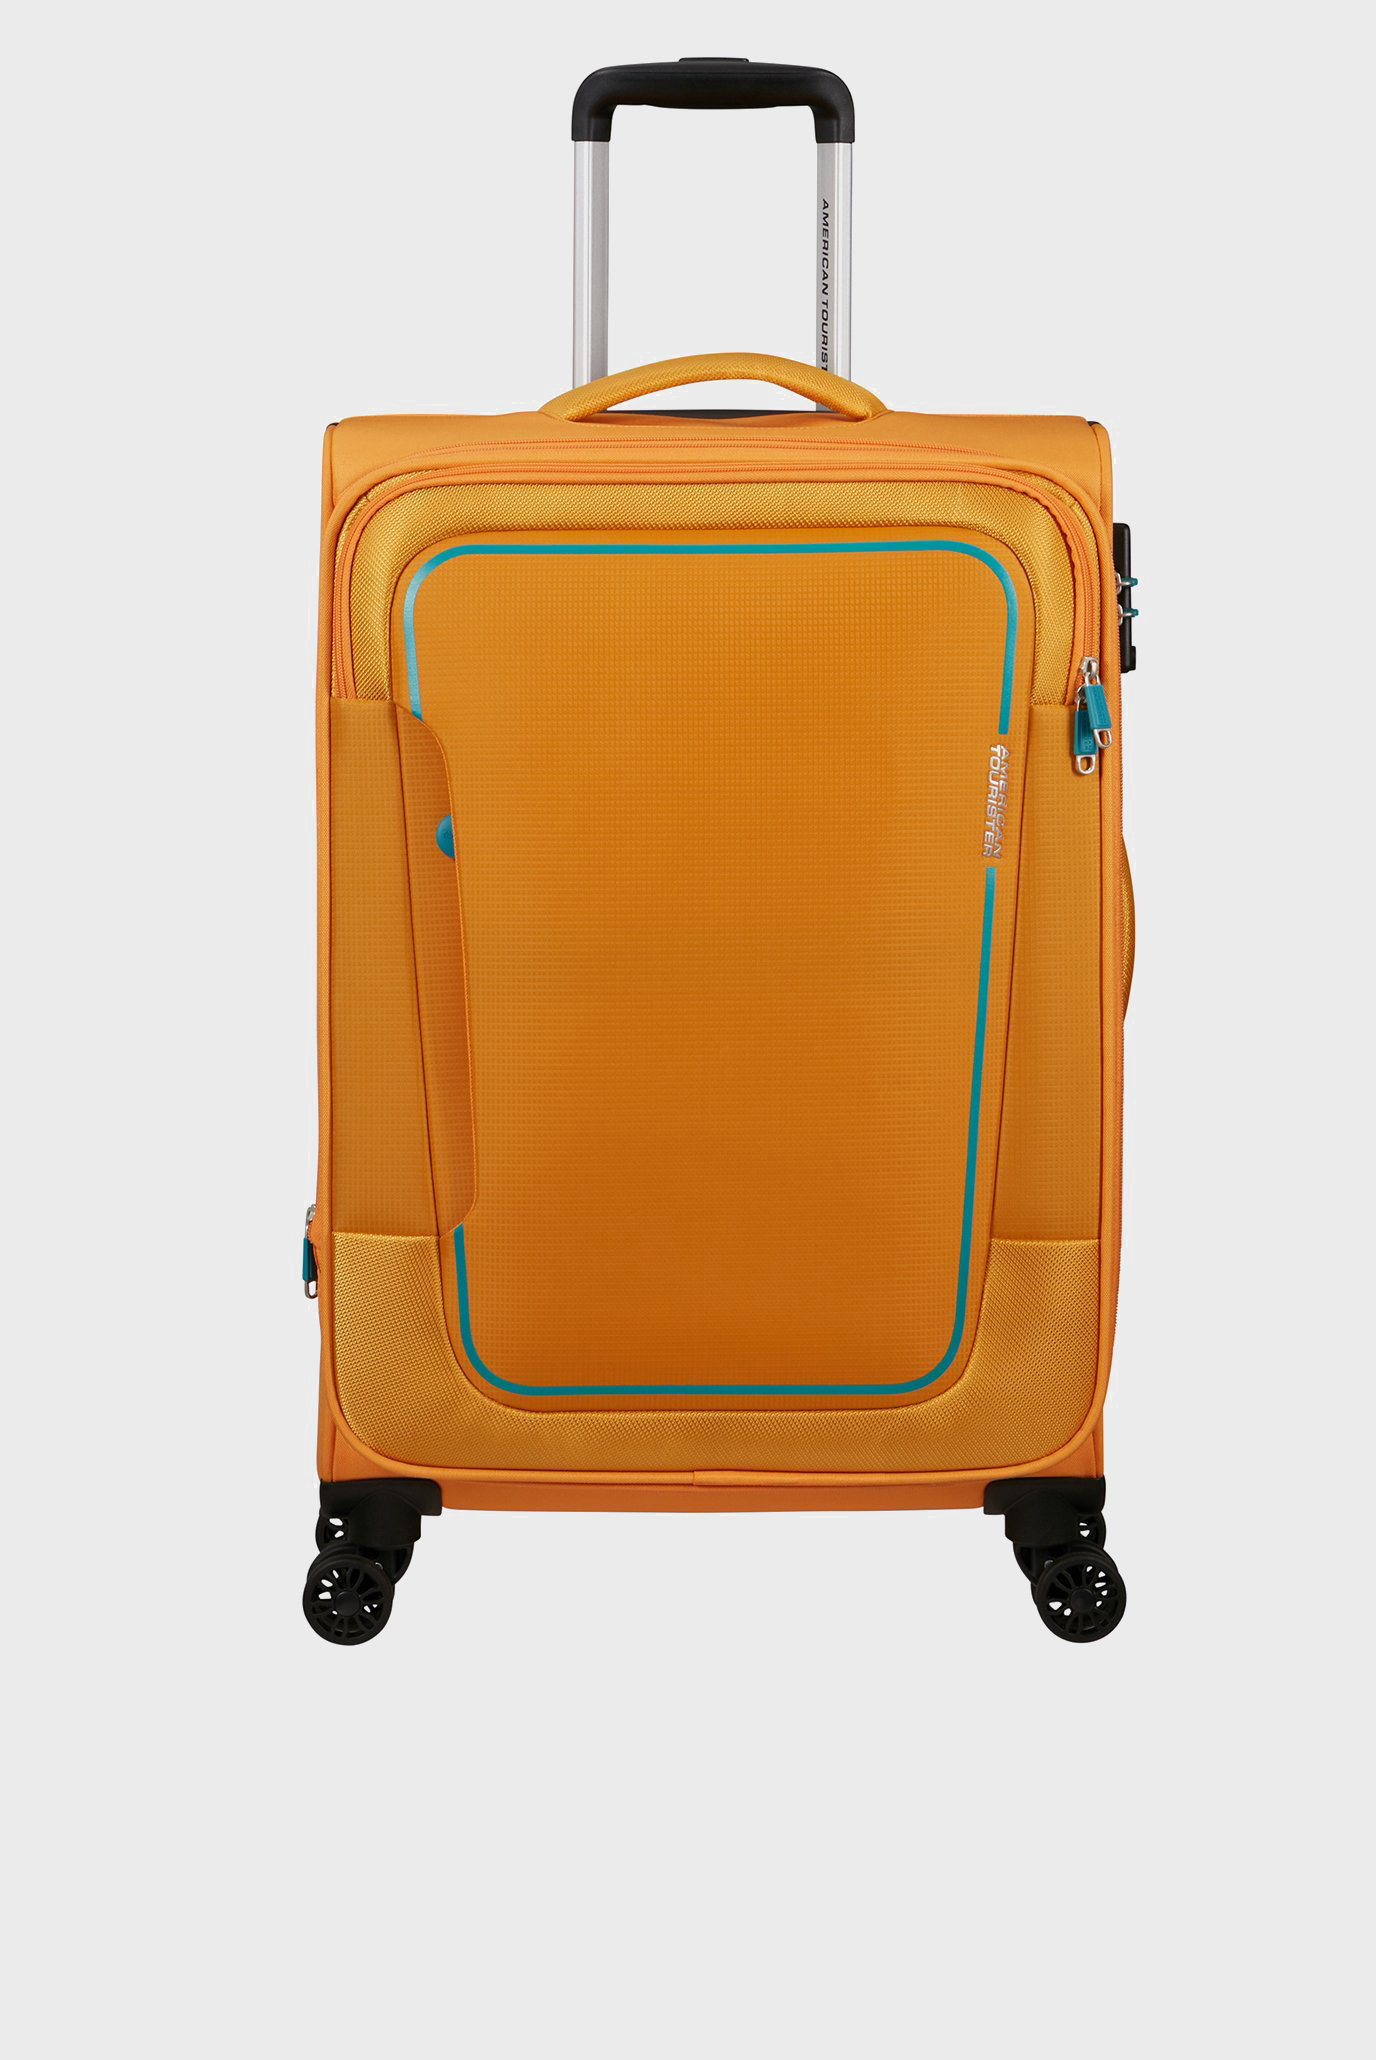 Оранжевый чемодан 68 см PULSONIC SUNSET YELLOW 1